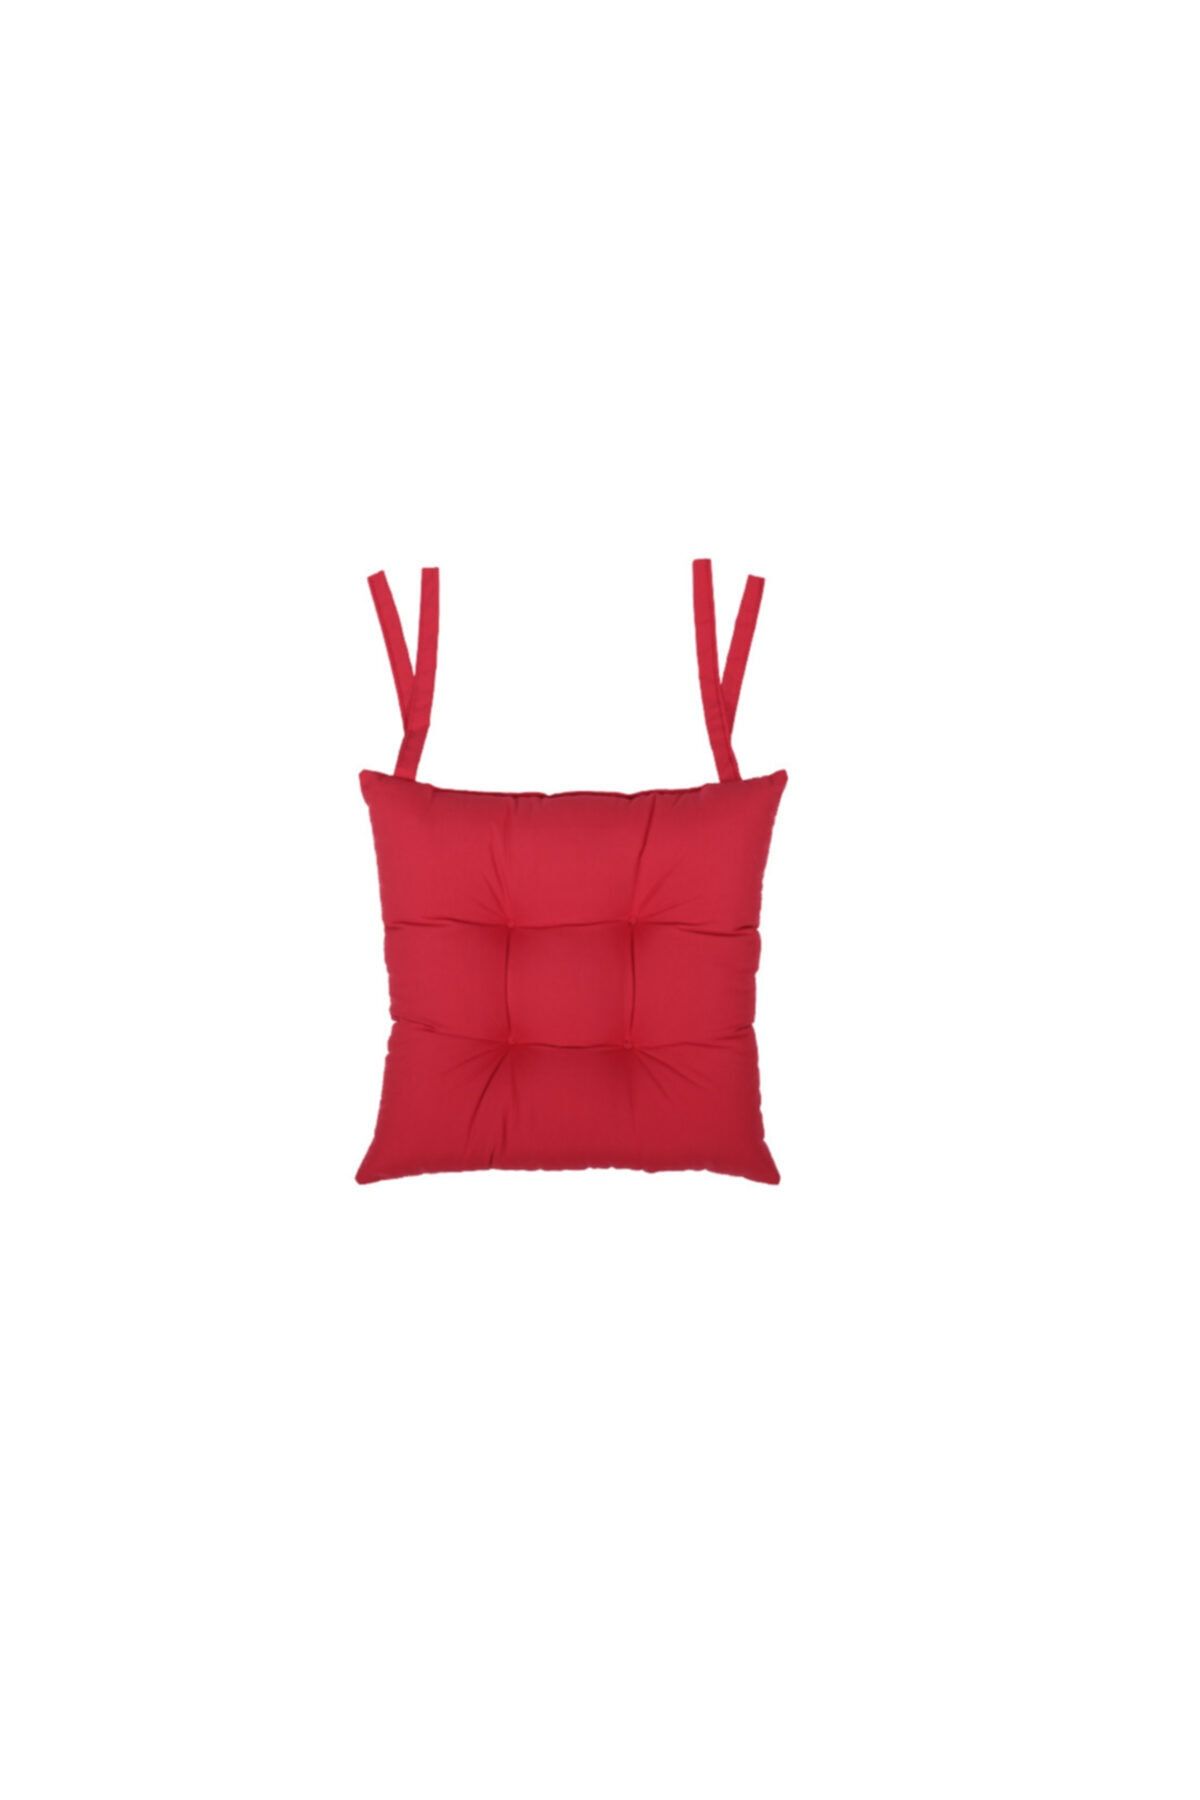 Kuscini Rosa Sandalye Minderi Kırmızı 35x35